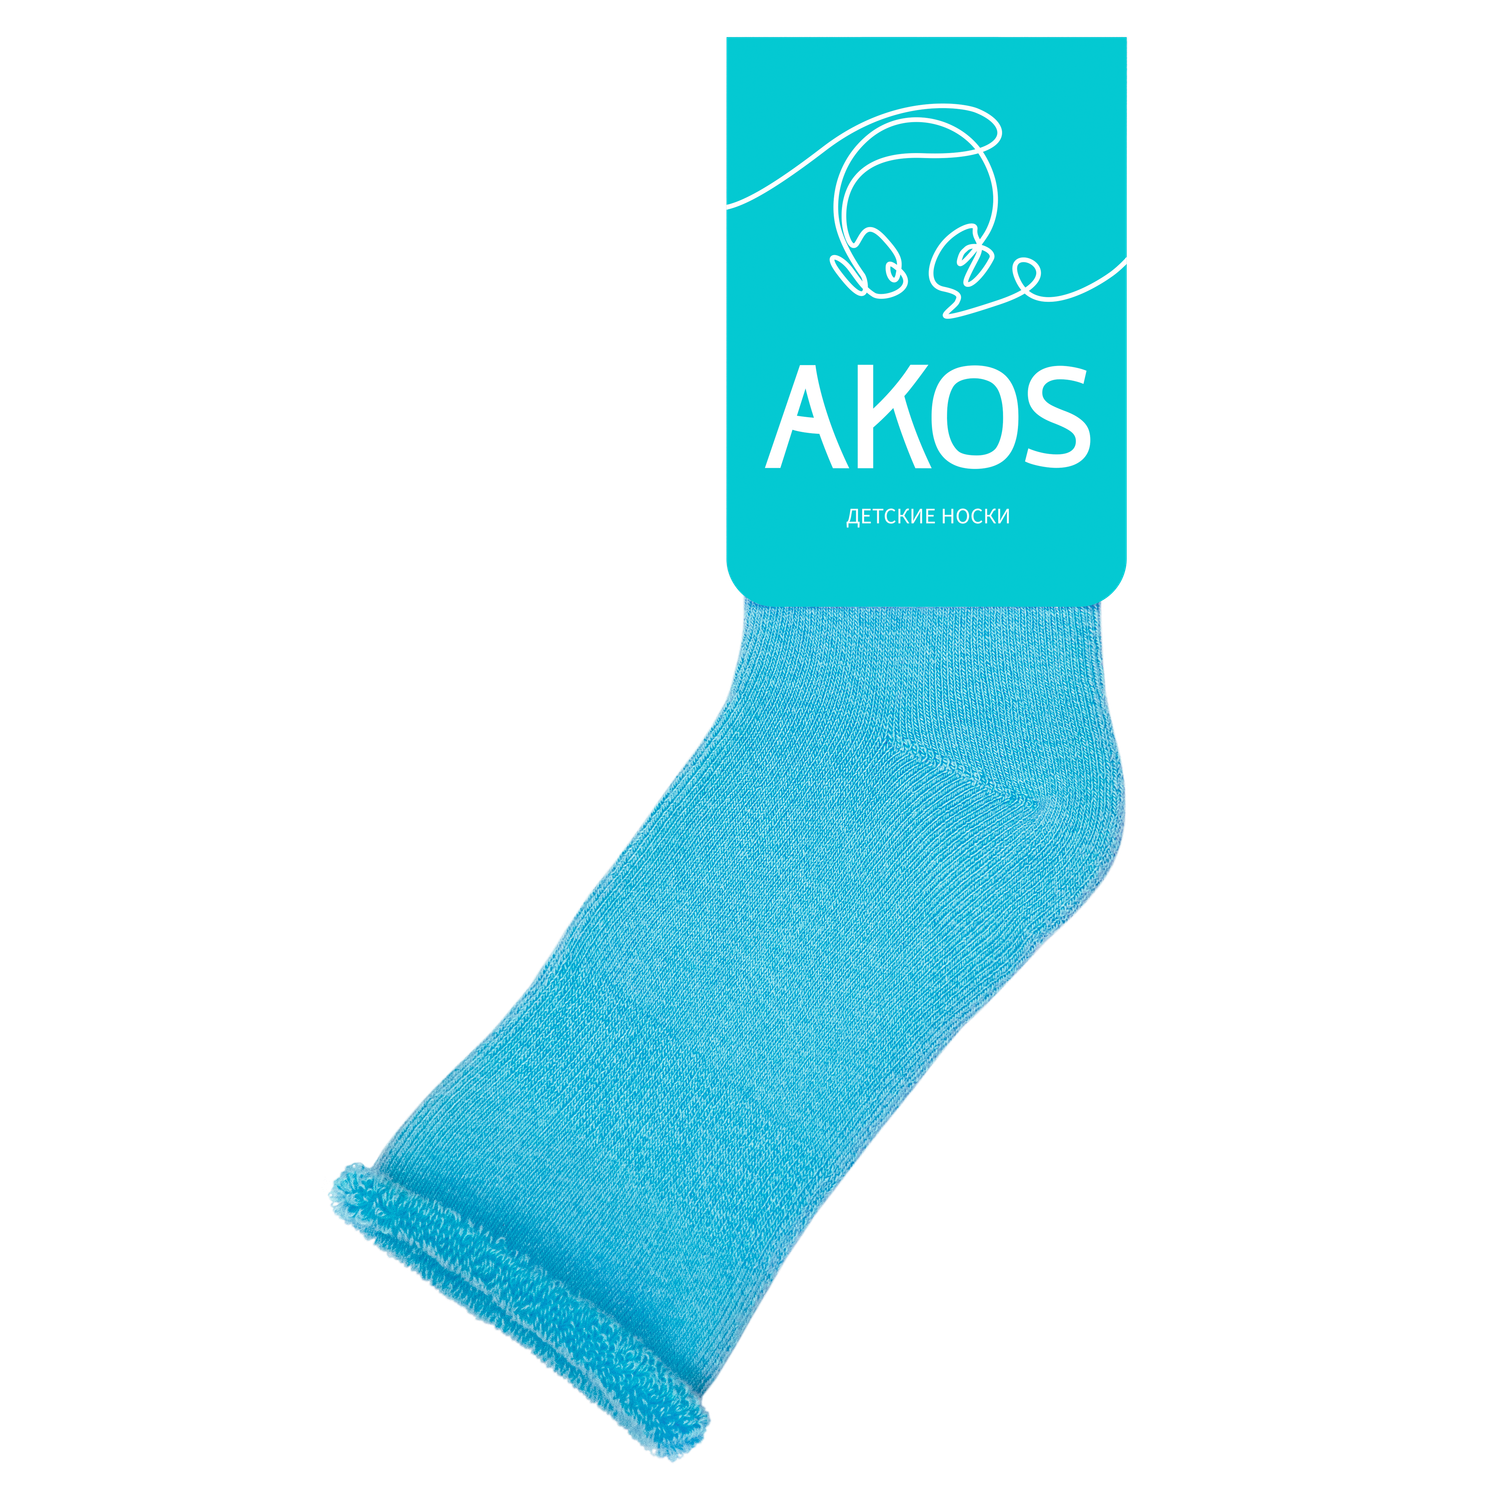 Носки детские махровые Akos - фото 1